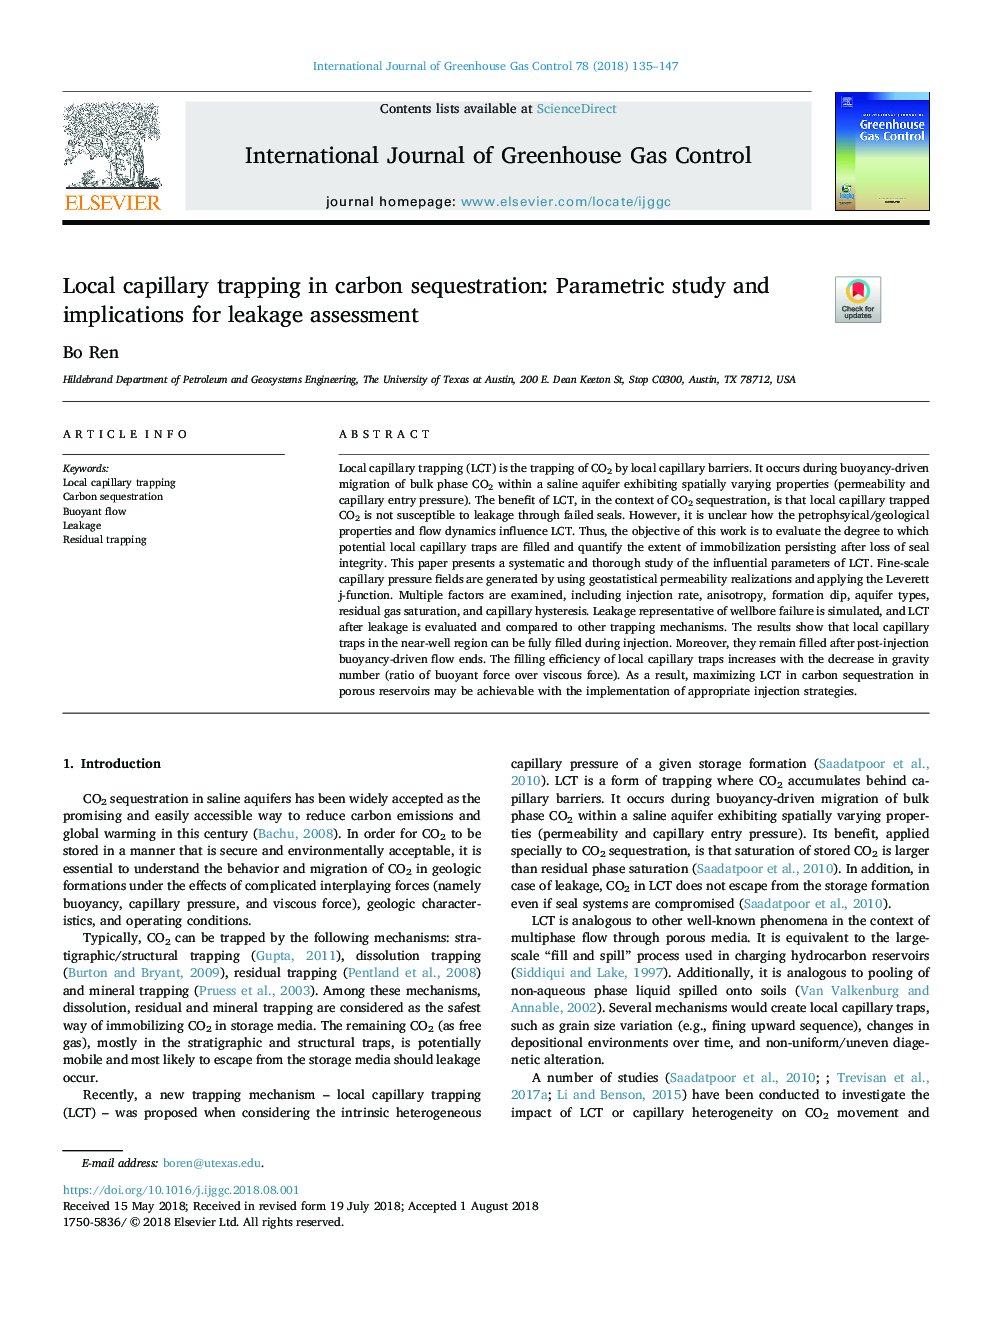 تله کشی مویرگی محلی در تسهیل کربن: مطالعه پارامتری و پیامدهای ارزیابی نشت 